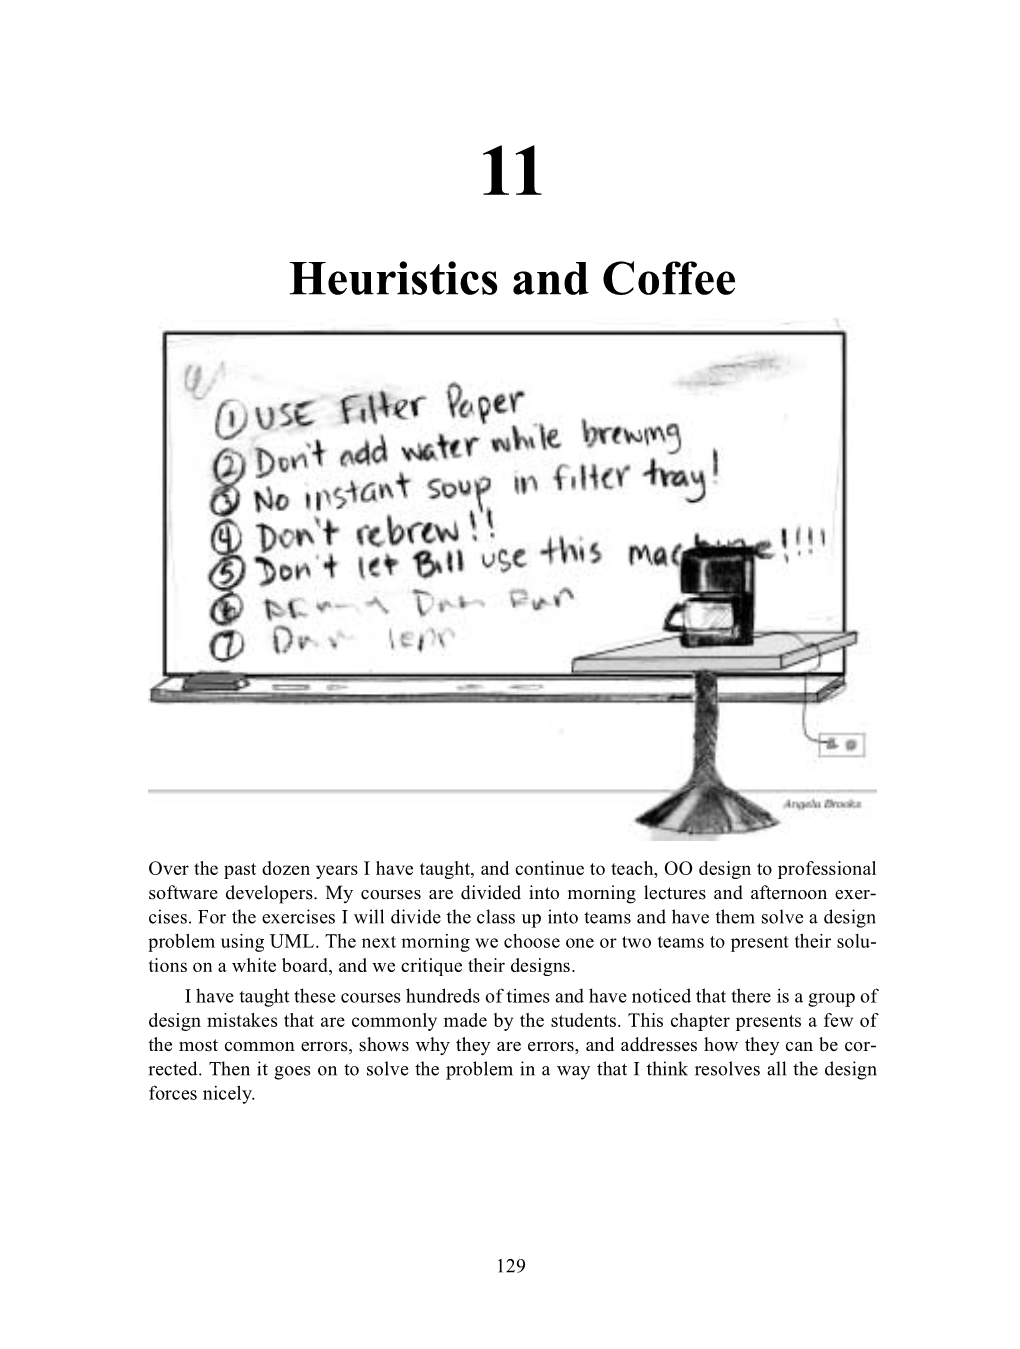 Heuristics and Coffee